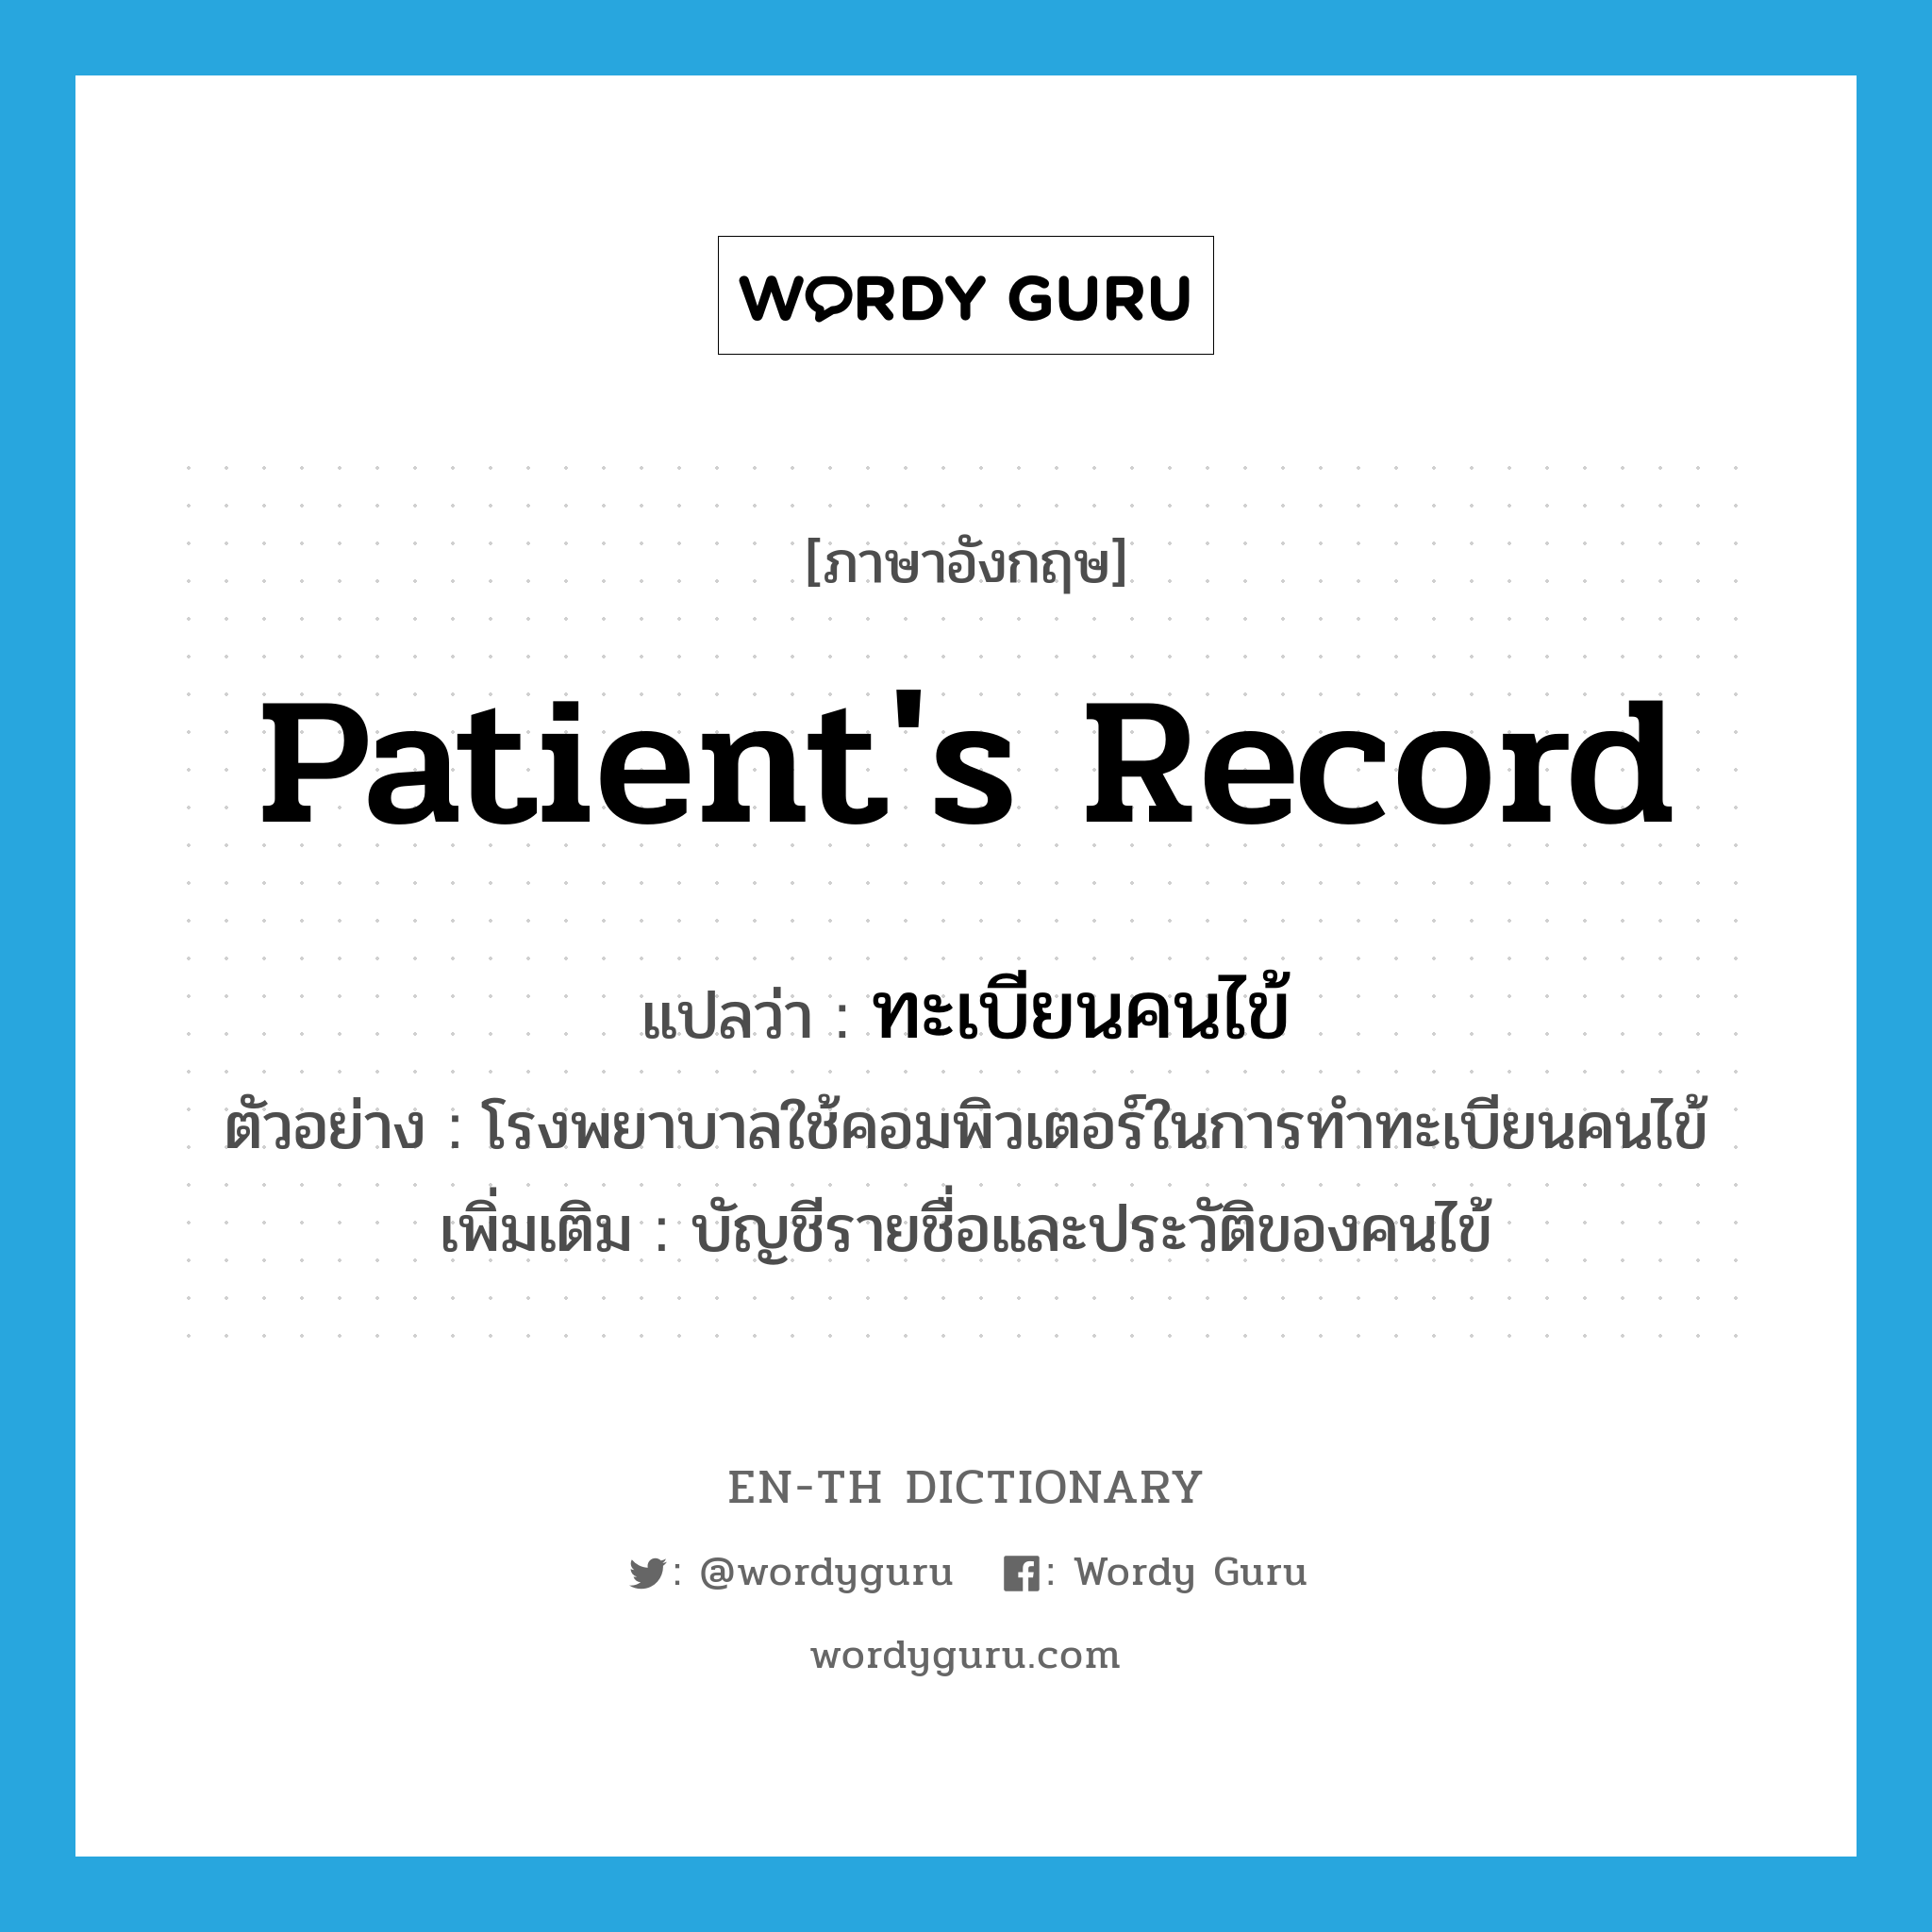 patient's record แปลว่า?, คำศัพท์ภาษาอังกฤษ patient's record แปลว่า ทะเบียนคนไข้ ประเภท N ตัวอย่าง โรงพยาบาลใช้คอมพิวเตอร์ในการทำทะเบียนคนไข้ เพิ่มเติม บัญชีรายชื่อและประวัติของคนไข้ หมวด N